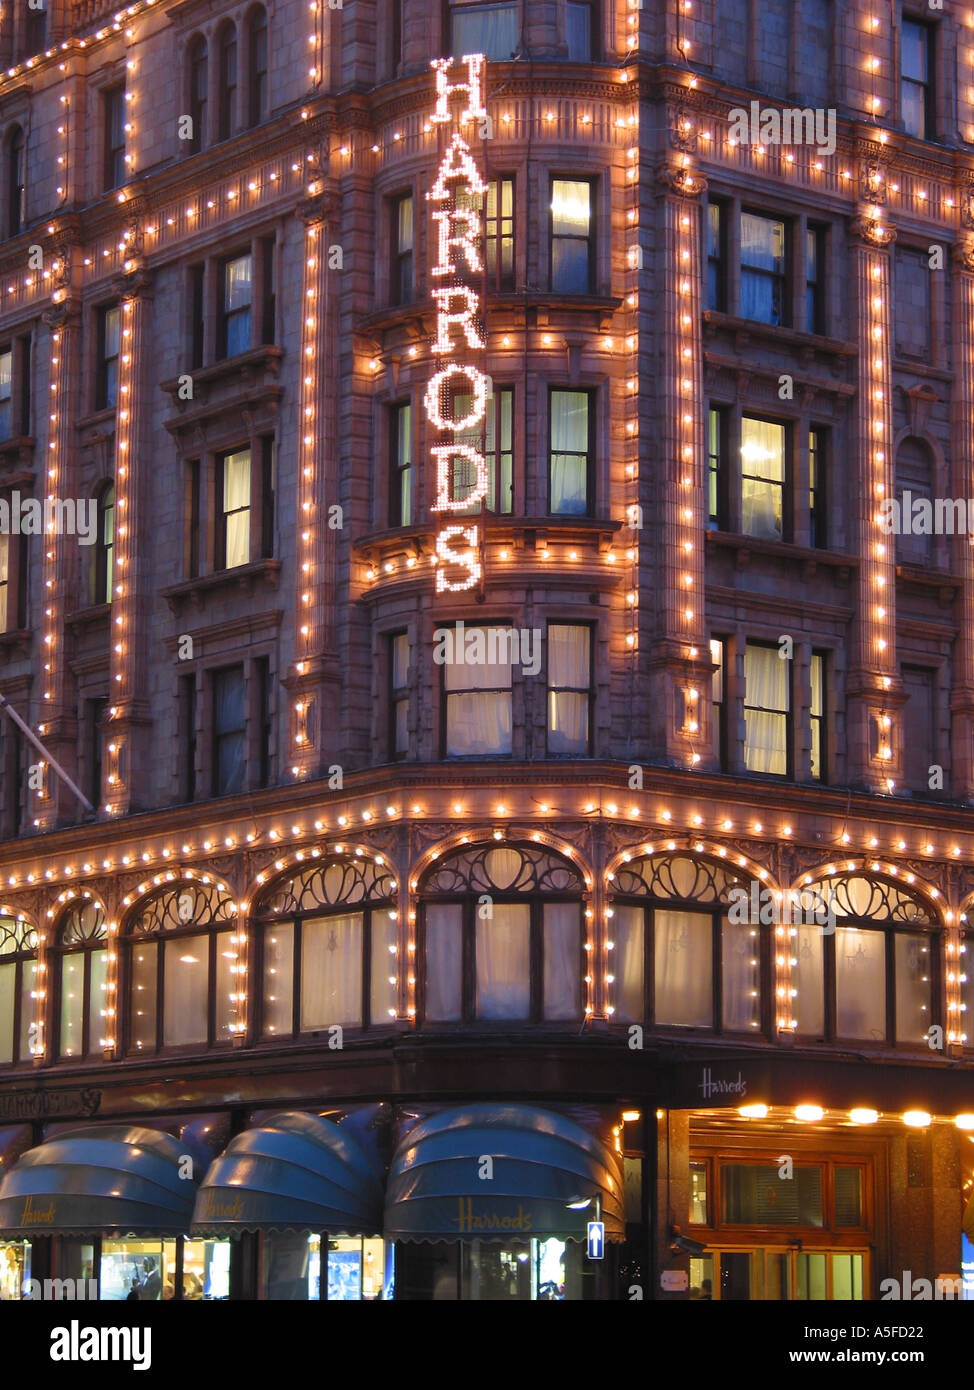 Harrods illuminé la nuit, Brompton Road, Knightsbridge, Royal Borough de Kensington et Chelsea, Londres, Angleterre, Royaume-Uni Banque D'Images